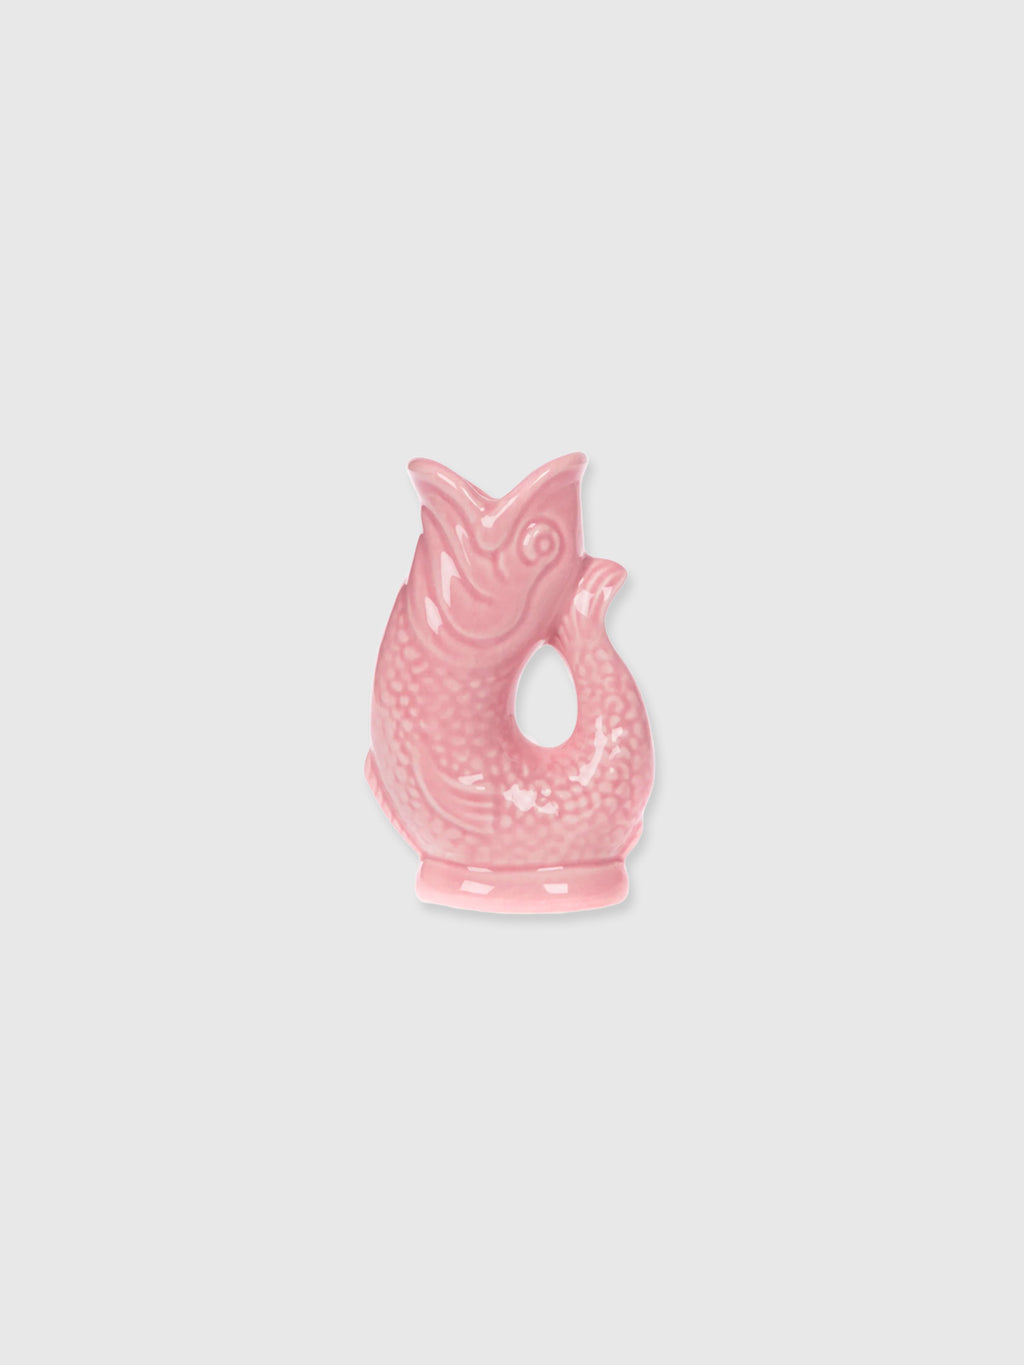 Gurgly Glug Jug Vase Mini Small - Pink